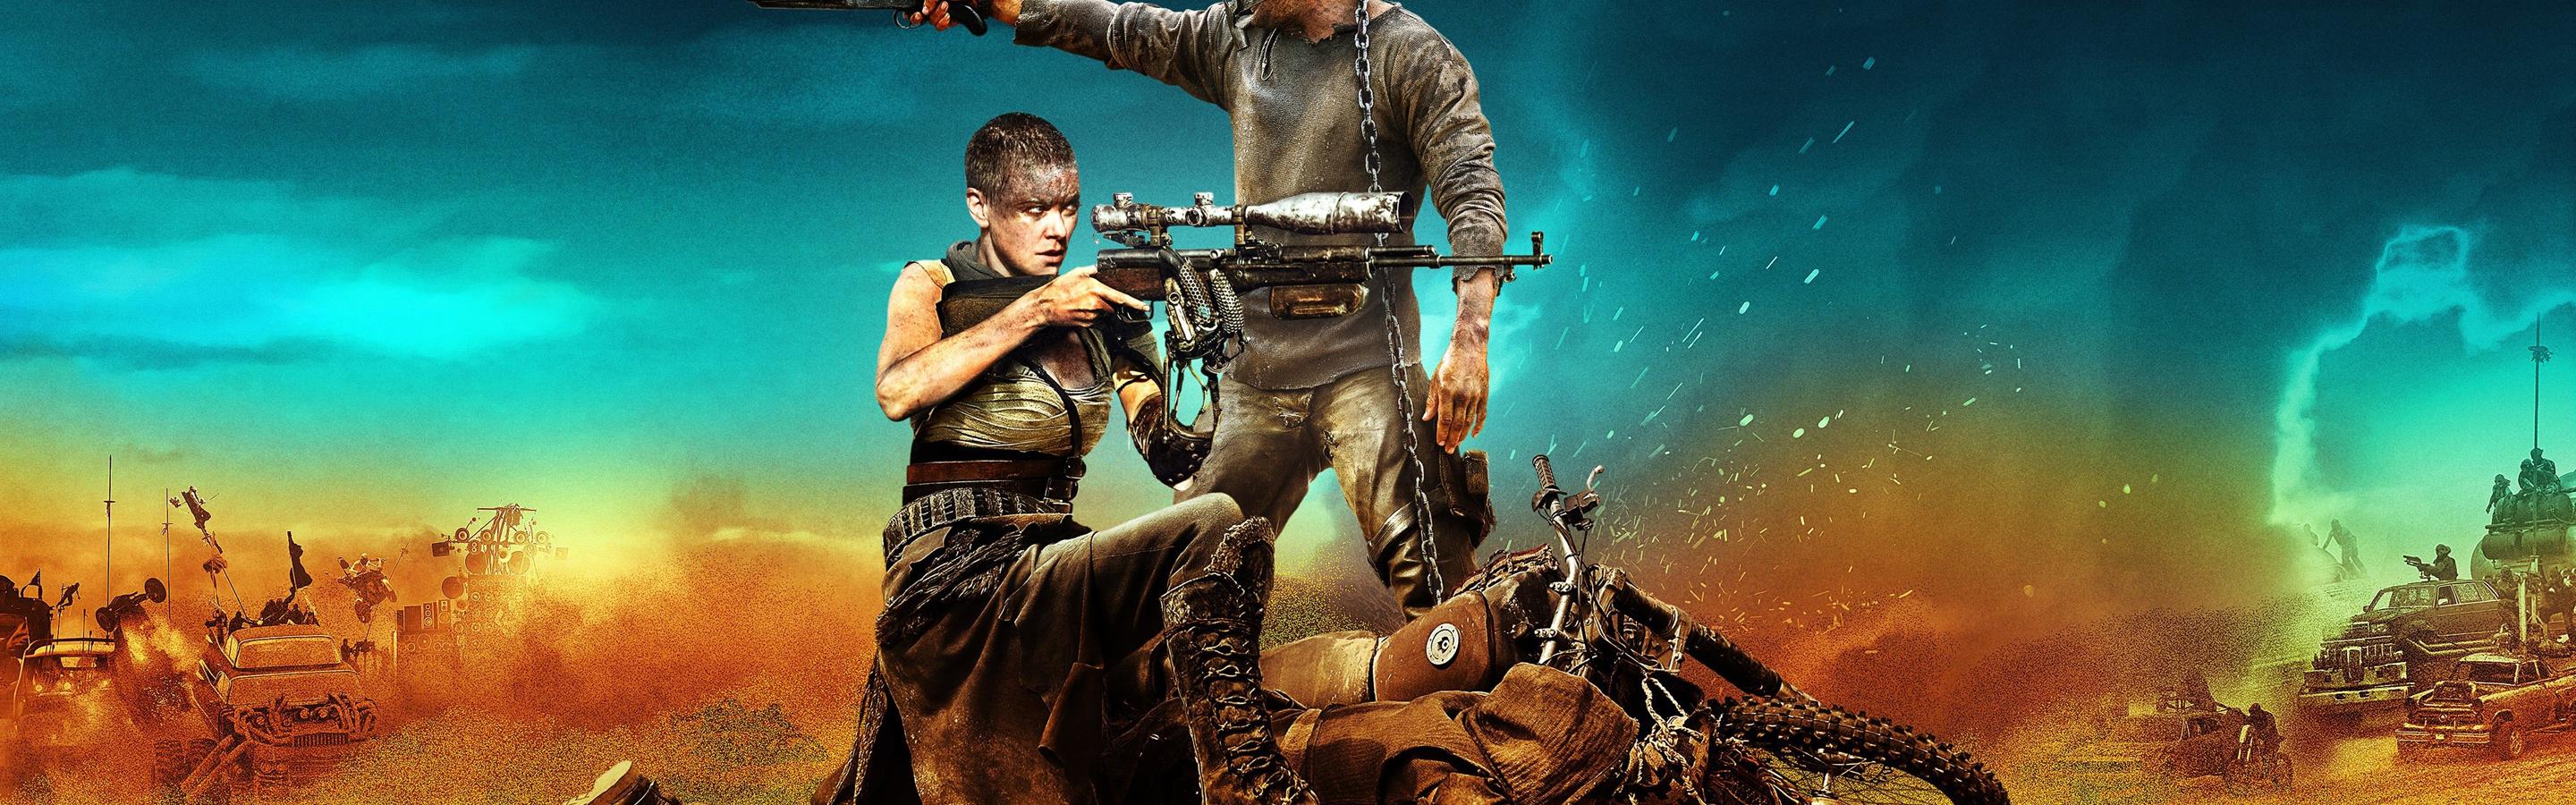 Mad Max: Fury Road hindi movie mp4 download